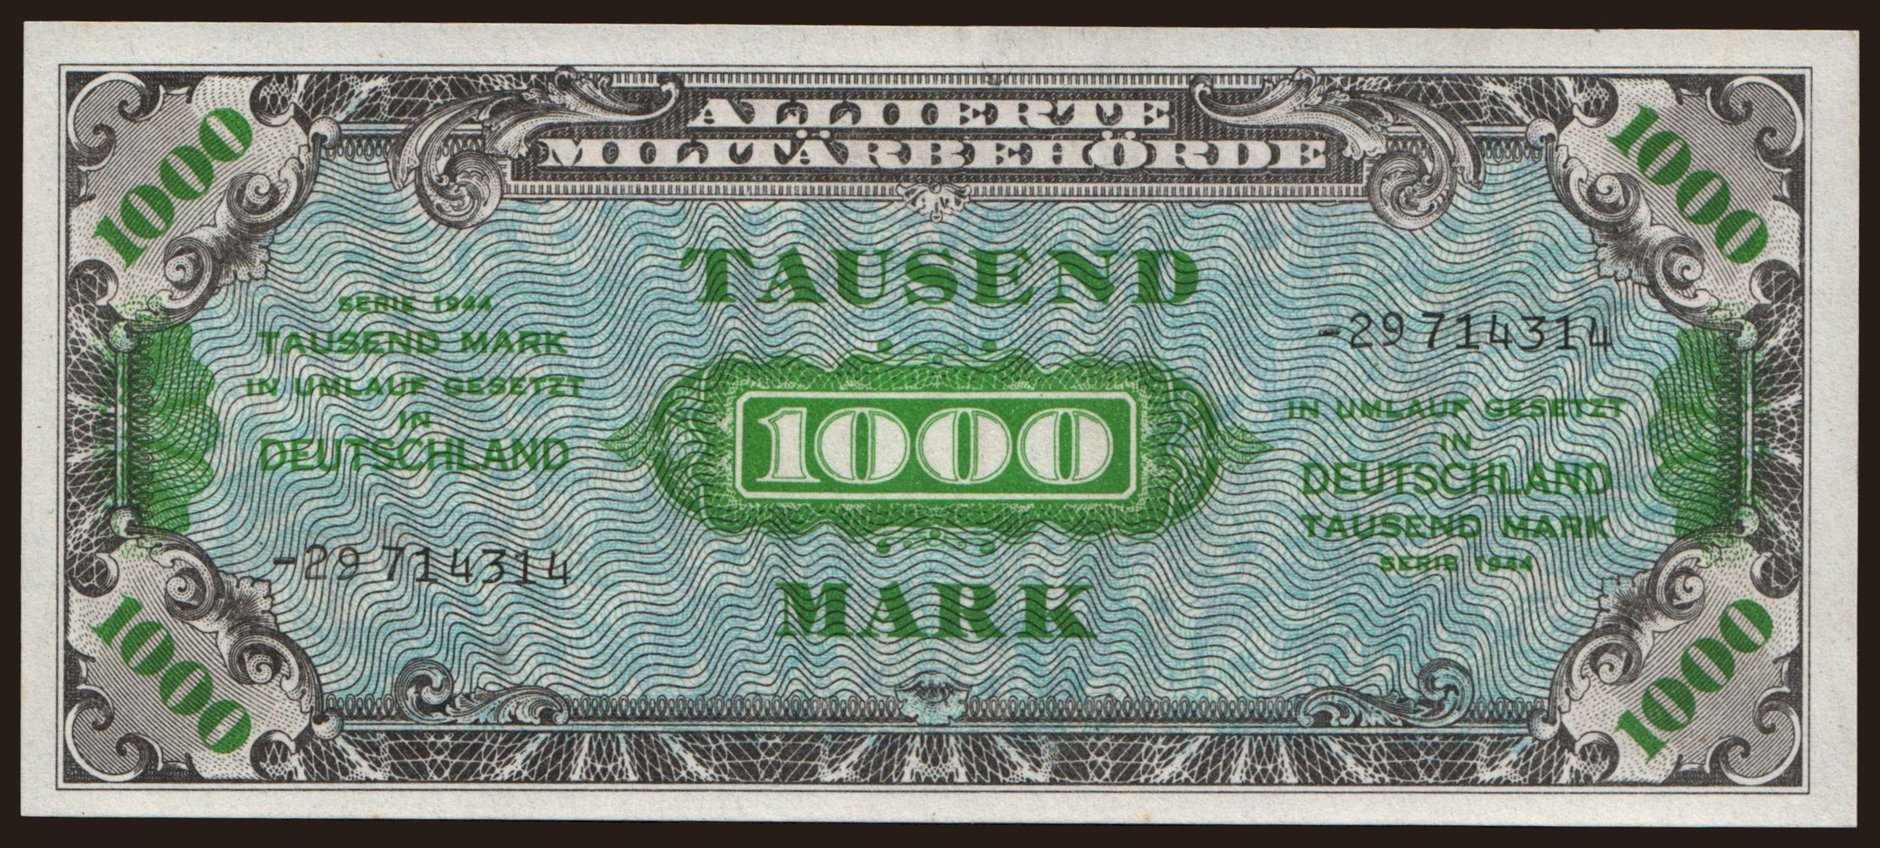 1000 Mark, 1944